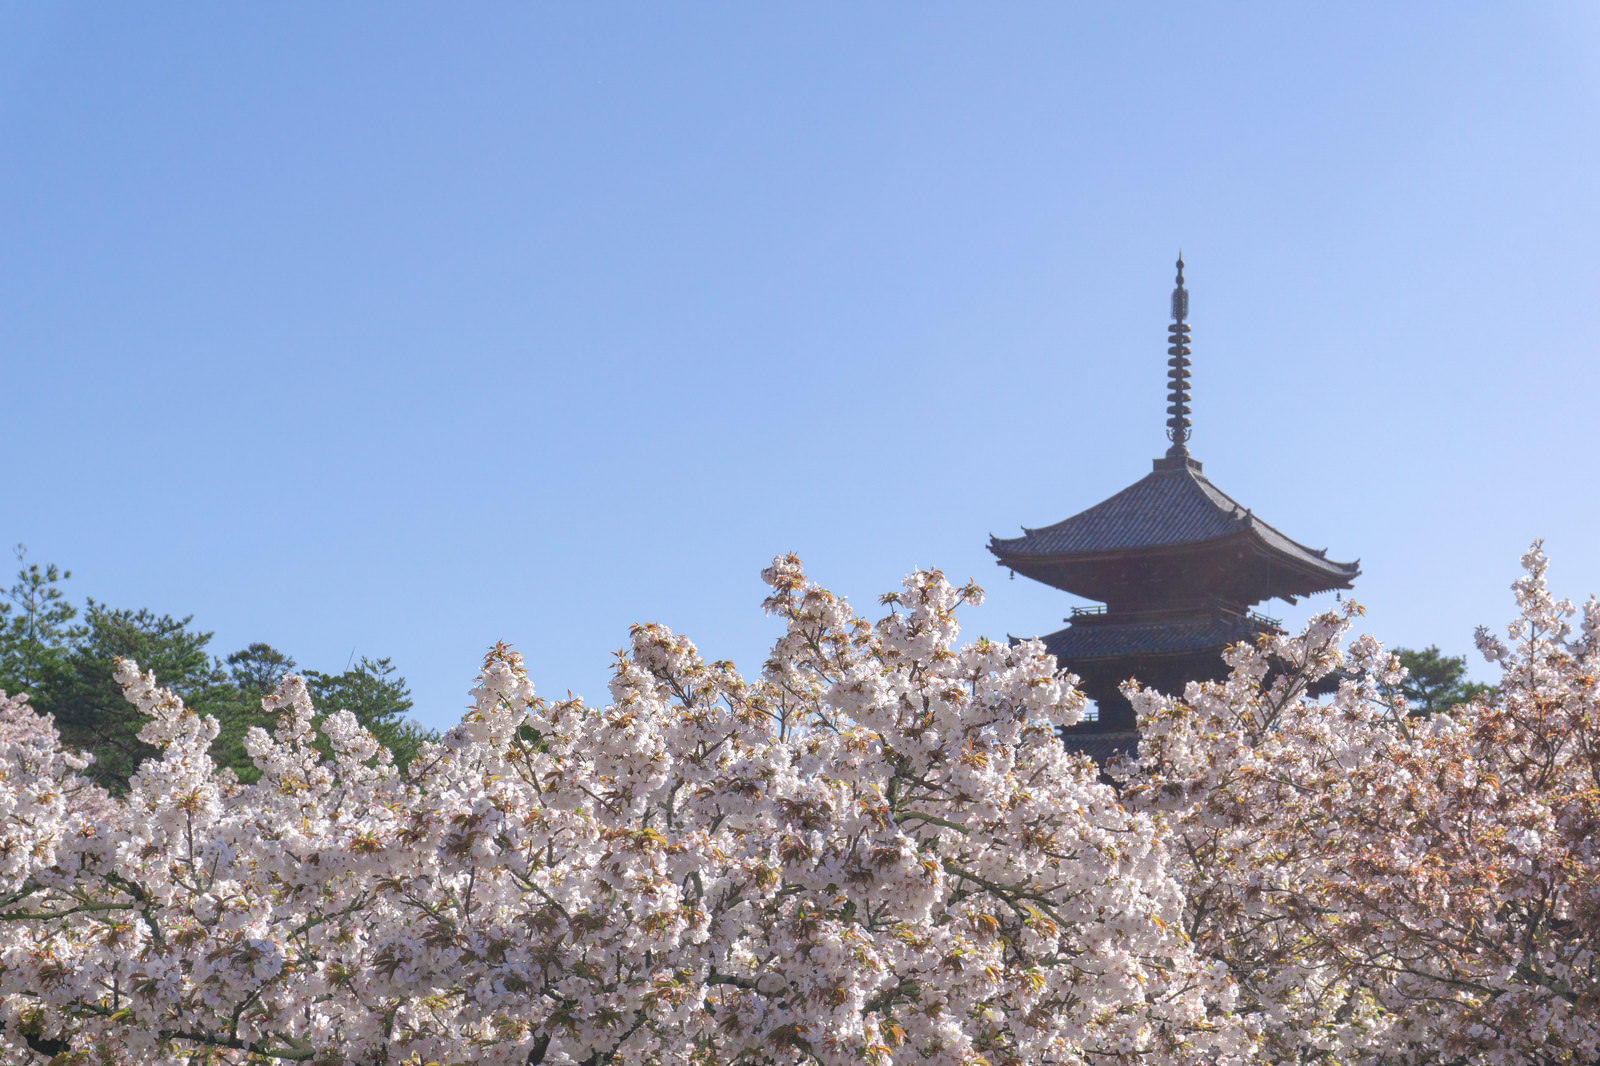 「朝の光の中の御室桜と五重塔 | フリー素材のぱくたそ」の写真